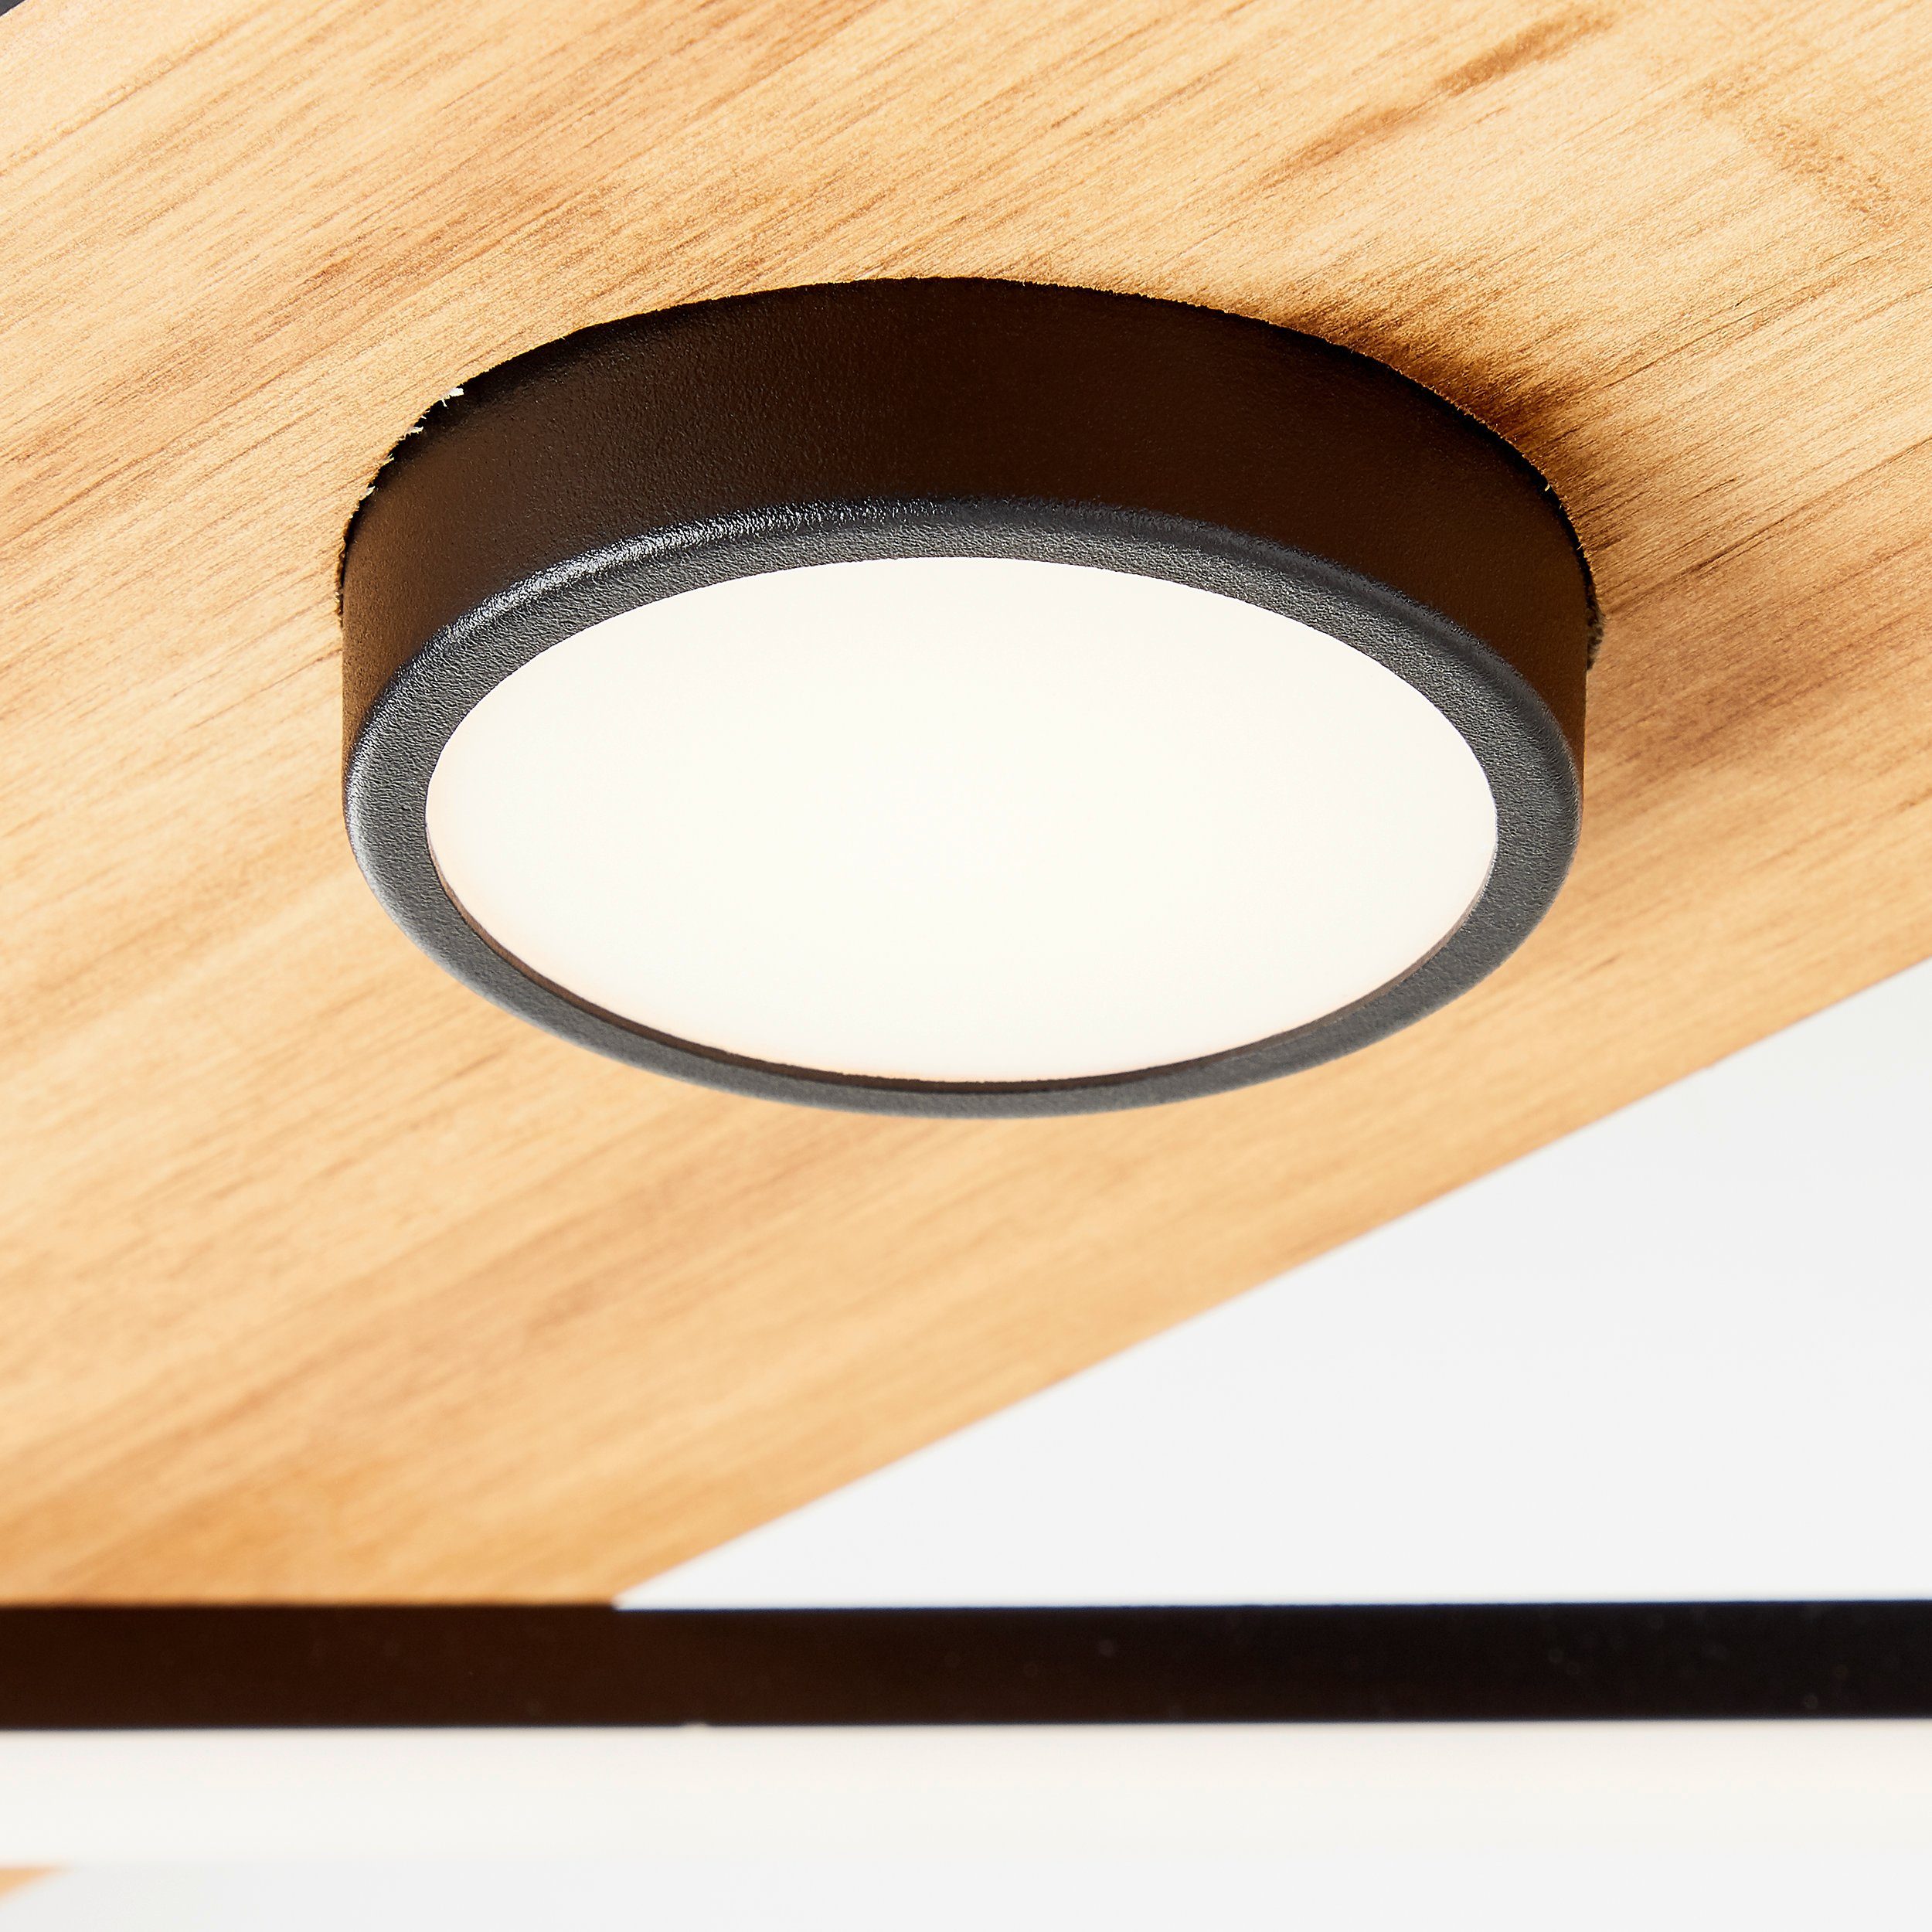 Woodbridge, Holz/Metall/Kunstst Woodbridge Deckenleuchte holz/schwarz, LED Brilliant 25x25cm Deckenleuchte